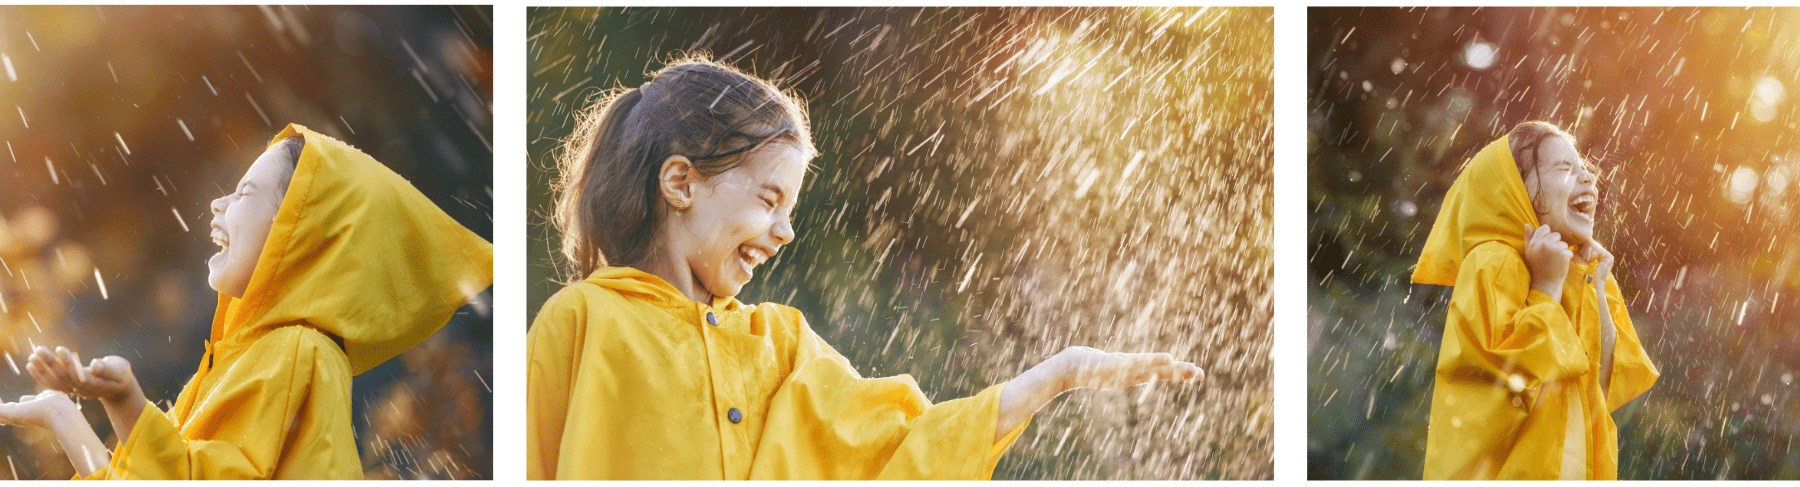 אוסף של שלוש תמונות של ילדה אשר לובשת חליפת סערה / חליפת גשם צהובה וצשחקת בגשם